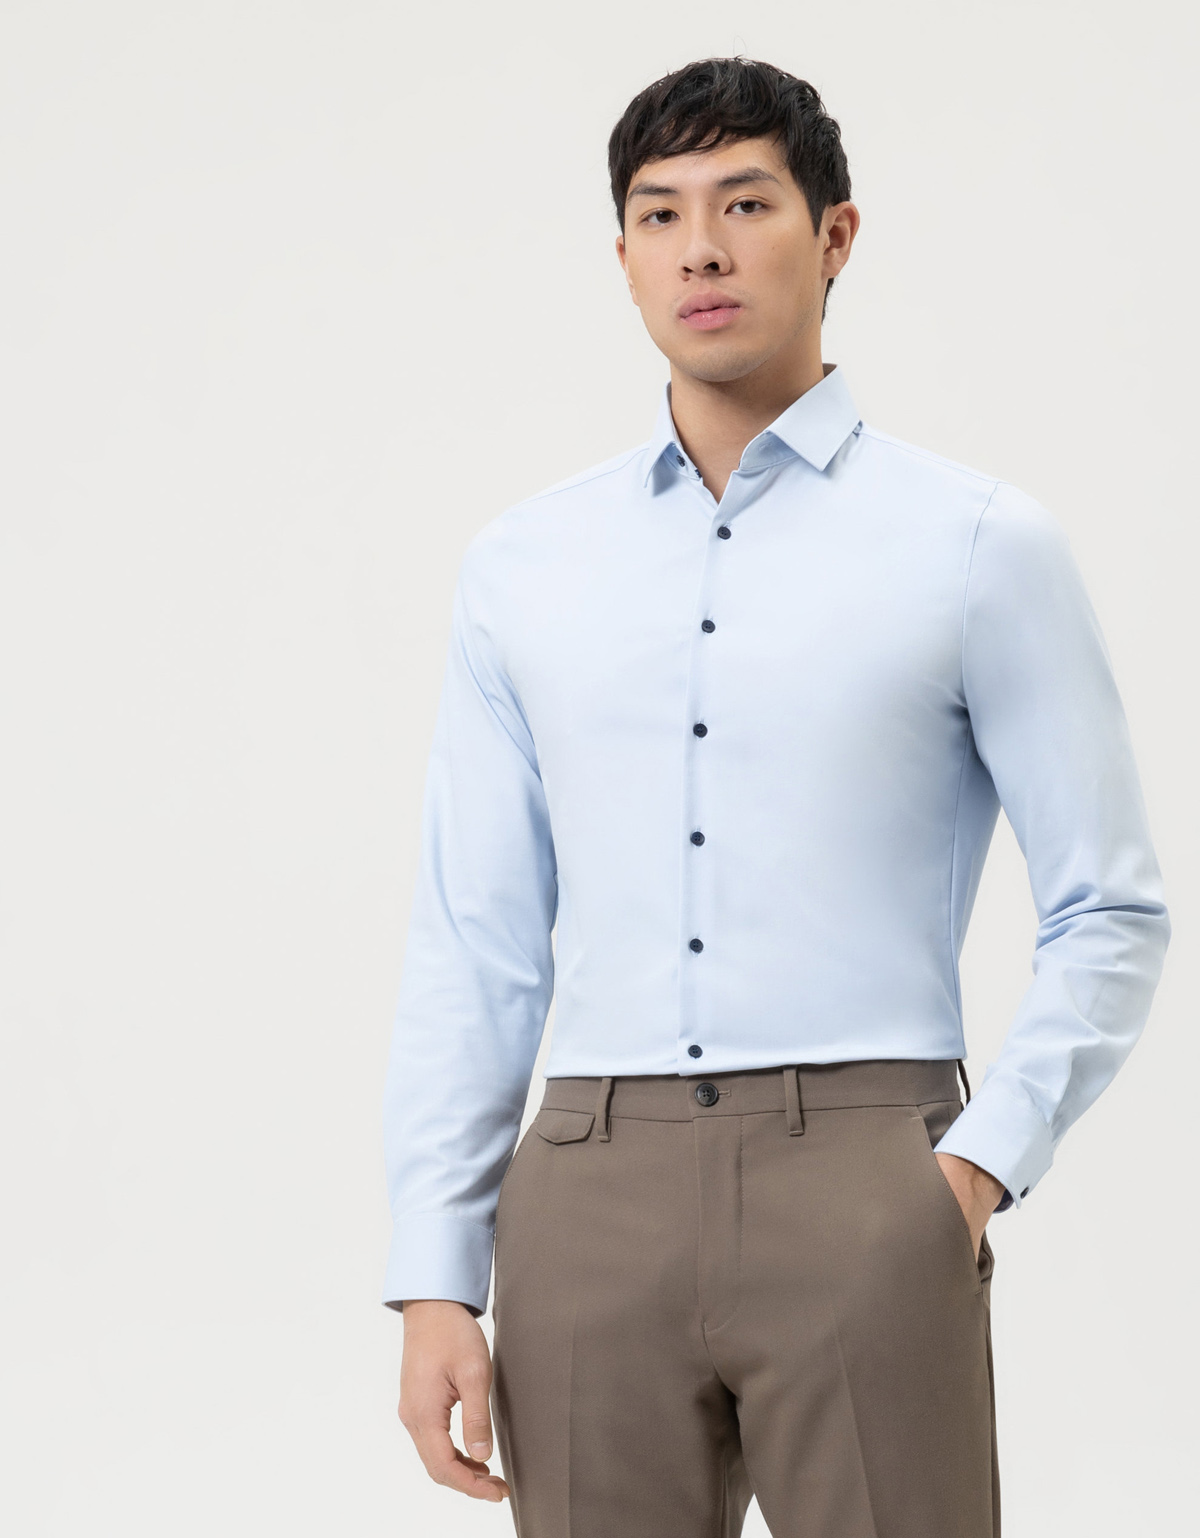 Рубашка голубая мужская климат-контроль OLYMP 24/7, body fit[Голубой]